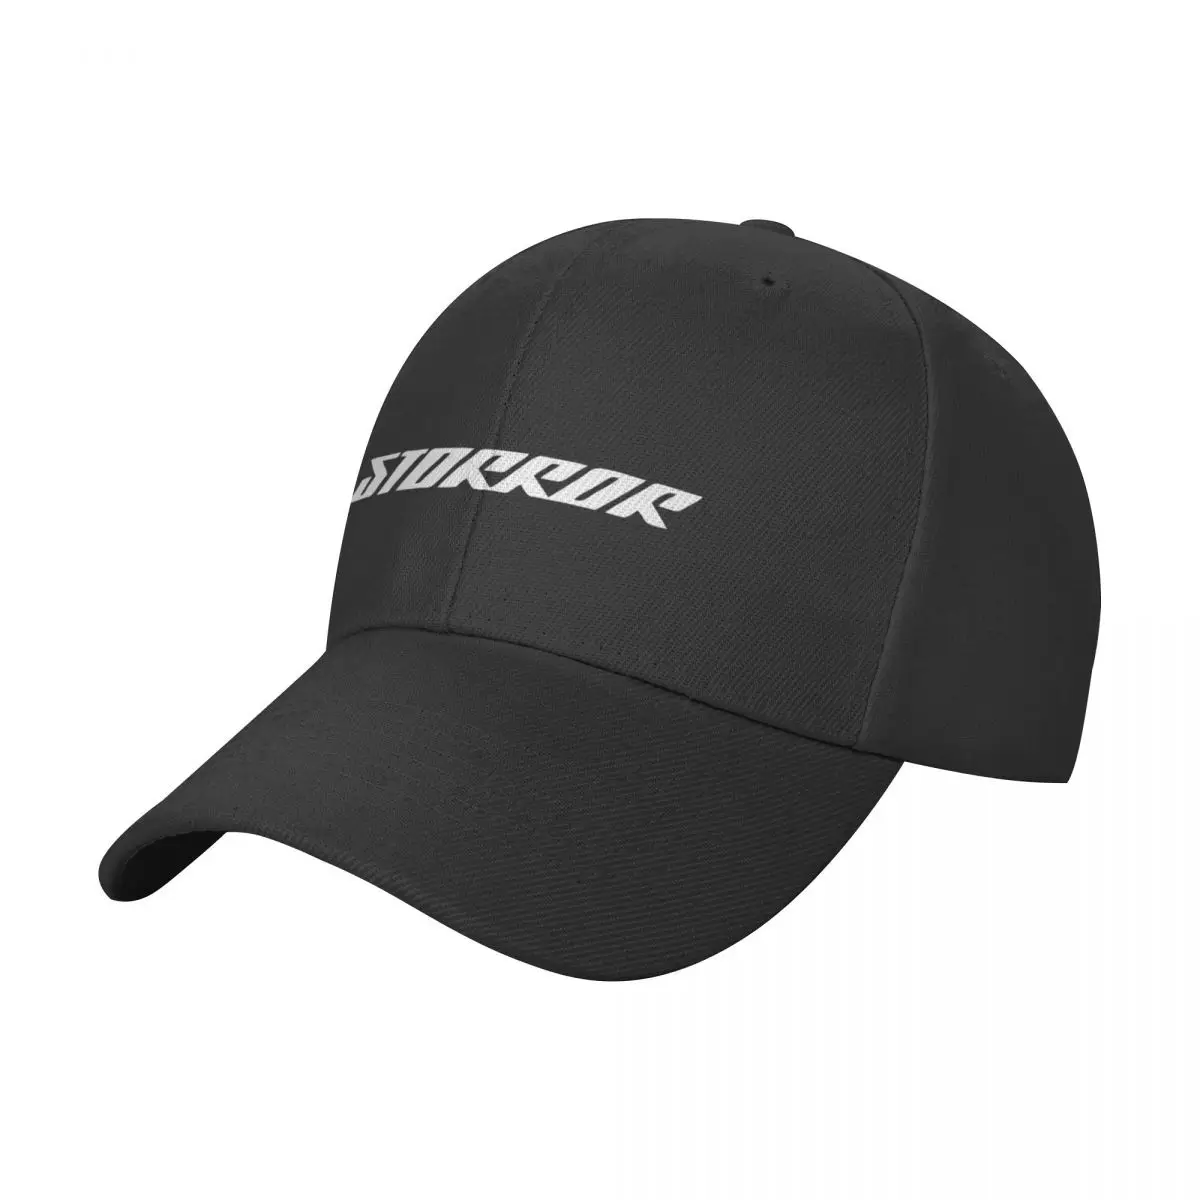 Потрясающая яркая кепка с логотипом Storror Essential Design Бейсболка Солнцезащитная кепка Походная шляпа мужские шляпы Женские